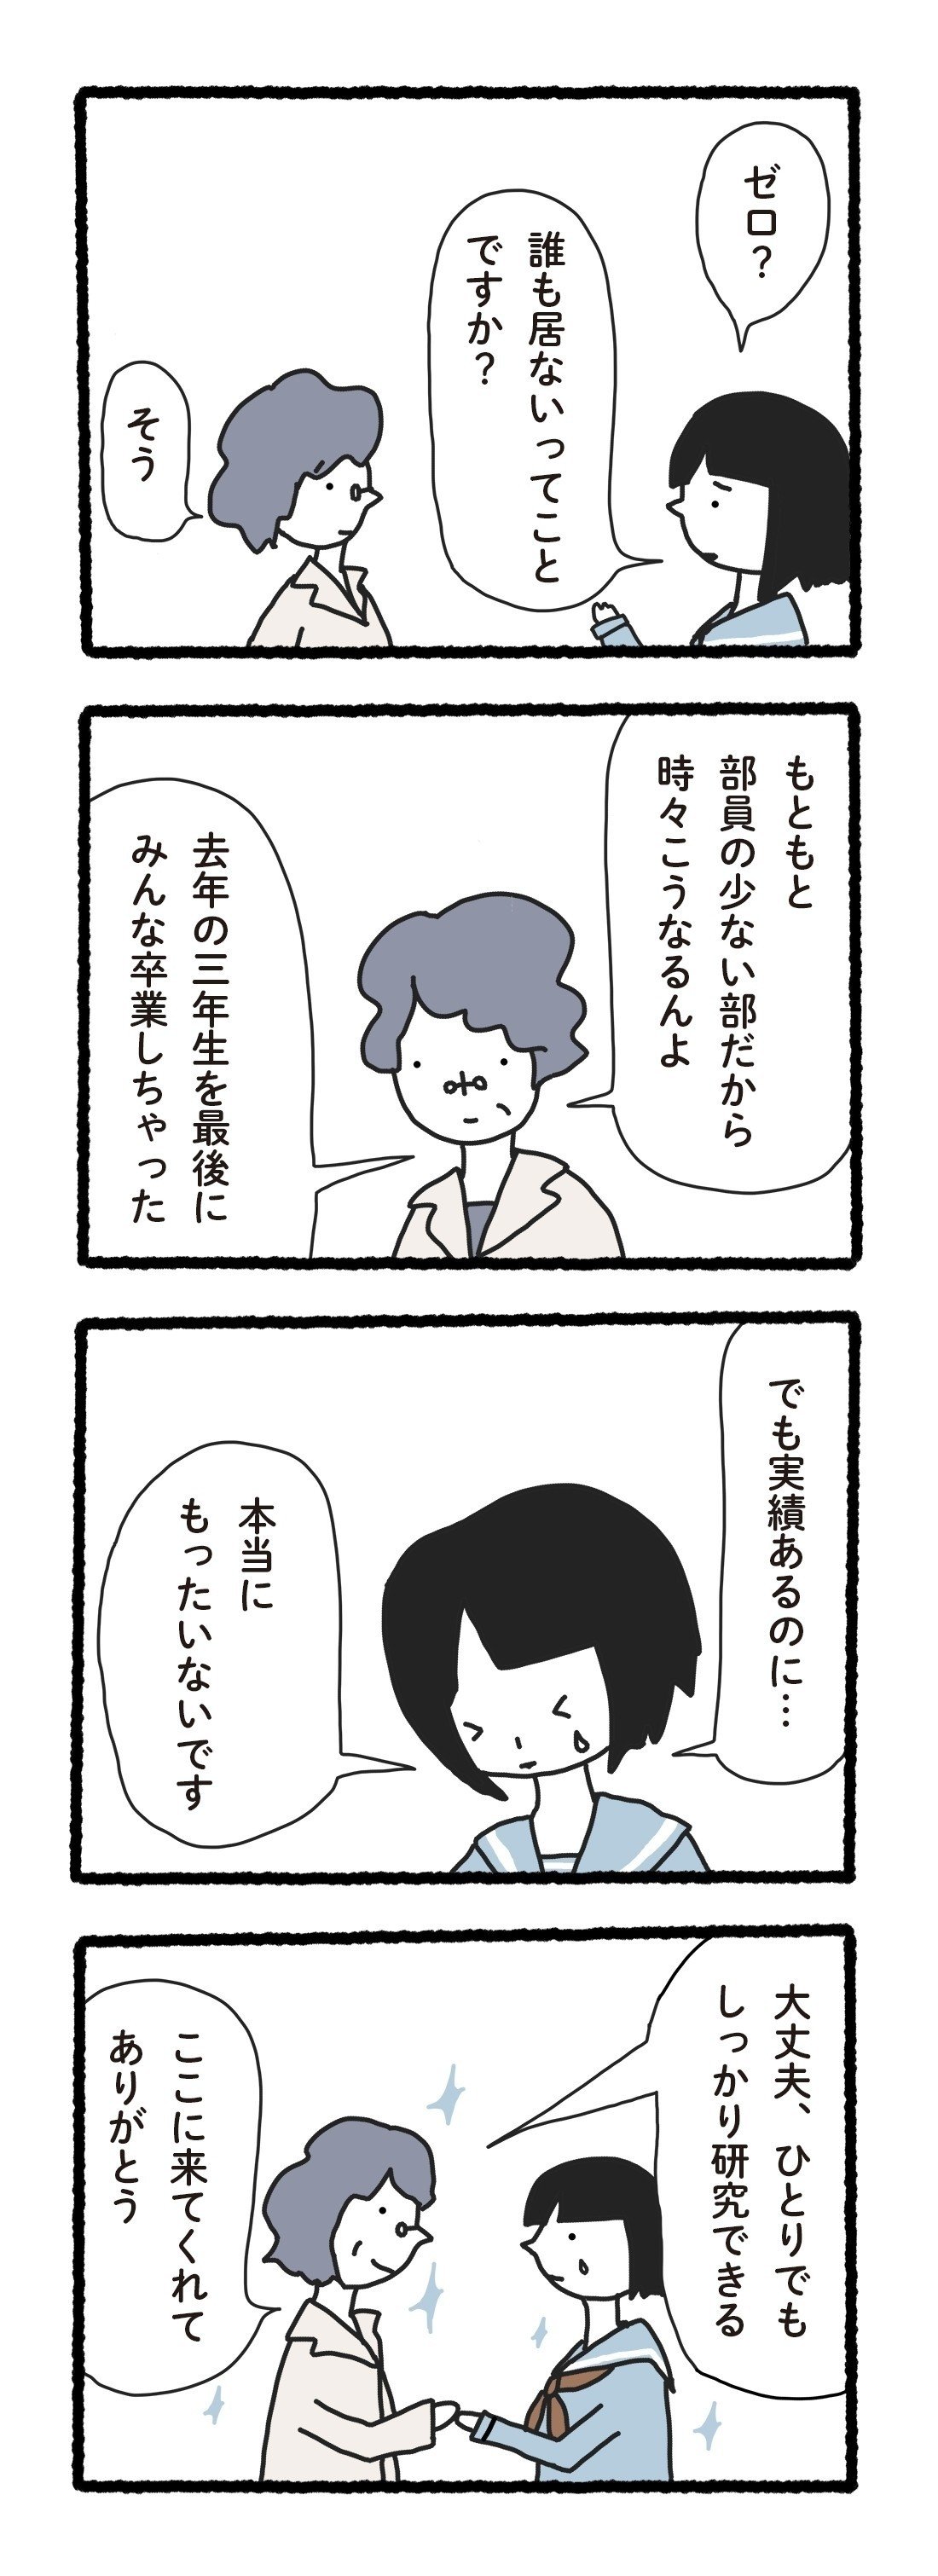 科学漫画001_09岡山